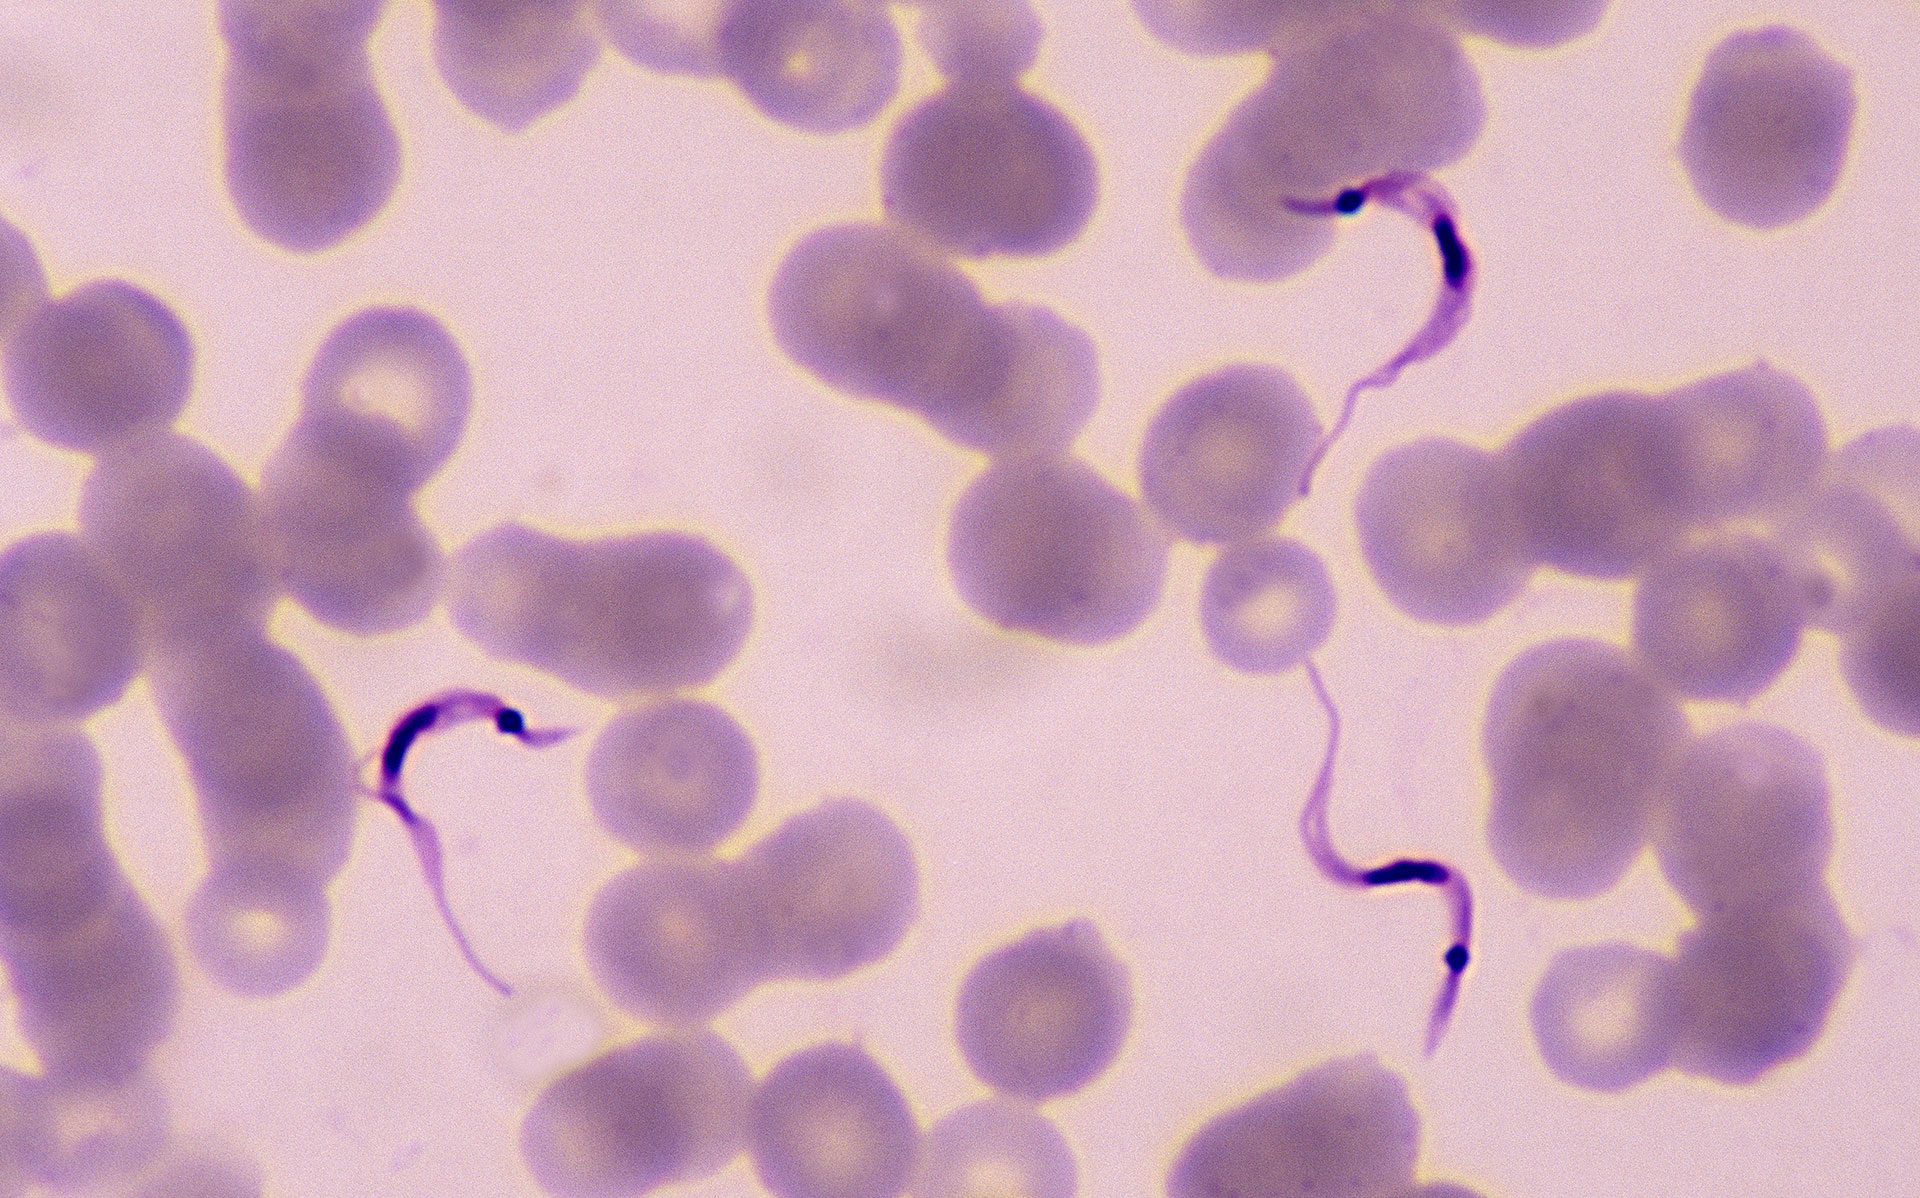 Así luce el parásito Trypanosoma cruzi cuando infecta a una persona. Se puede observar con una forma alargada y de un color más oscuro / Crédito: Getty